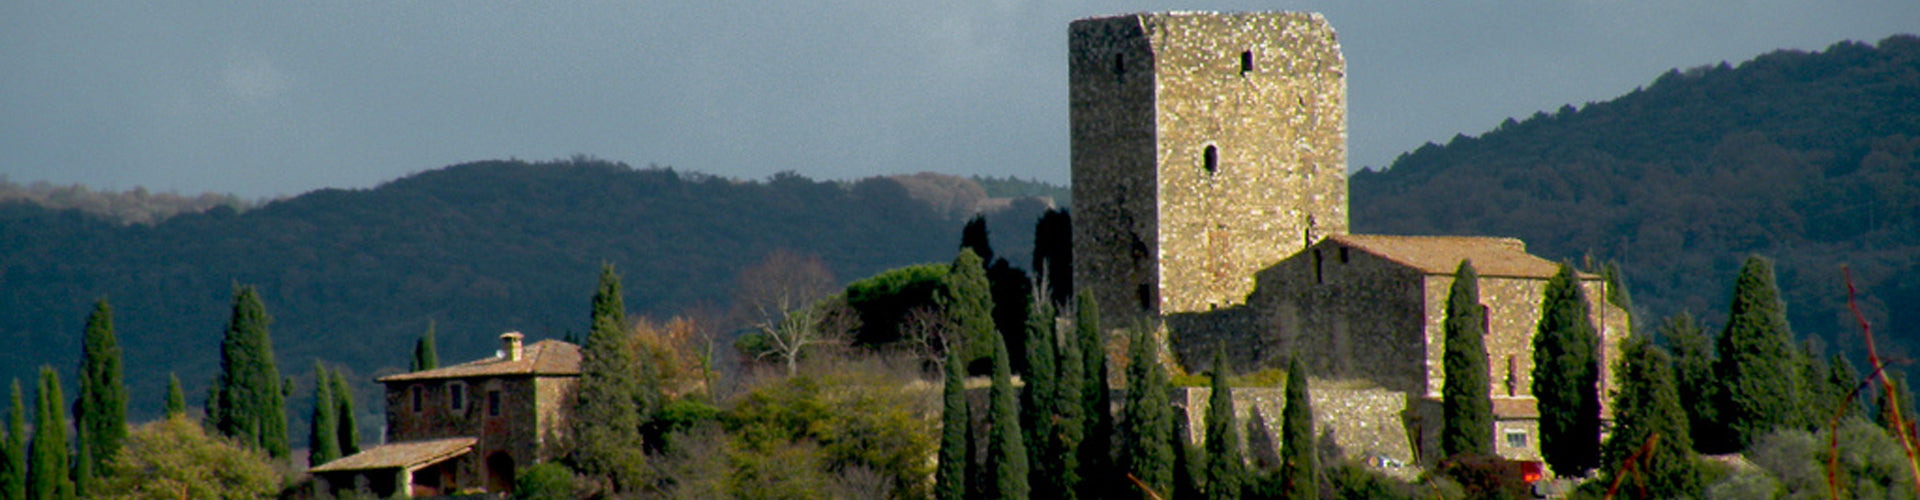 Castello di Argiano Montalcino